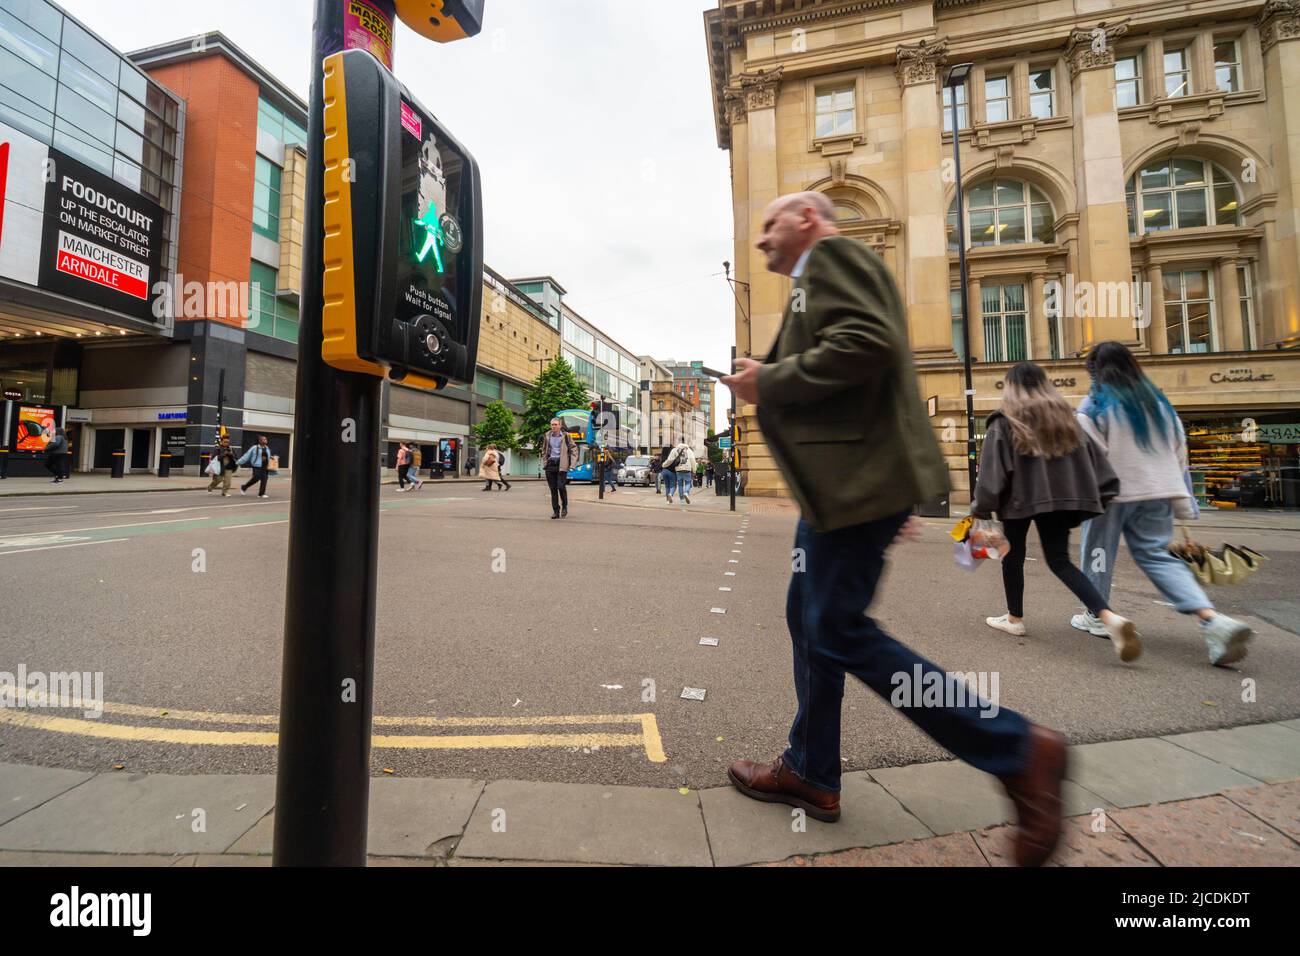 Pedoni che attraversano la strada a Market Street, Manchester. Un incrocio con pulcinella mostra il "uomo verde" mentre la gente attraversa la strada. Inghilterra, Regno Unito Foto Stock